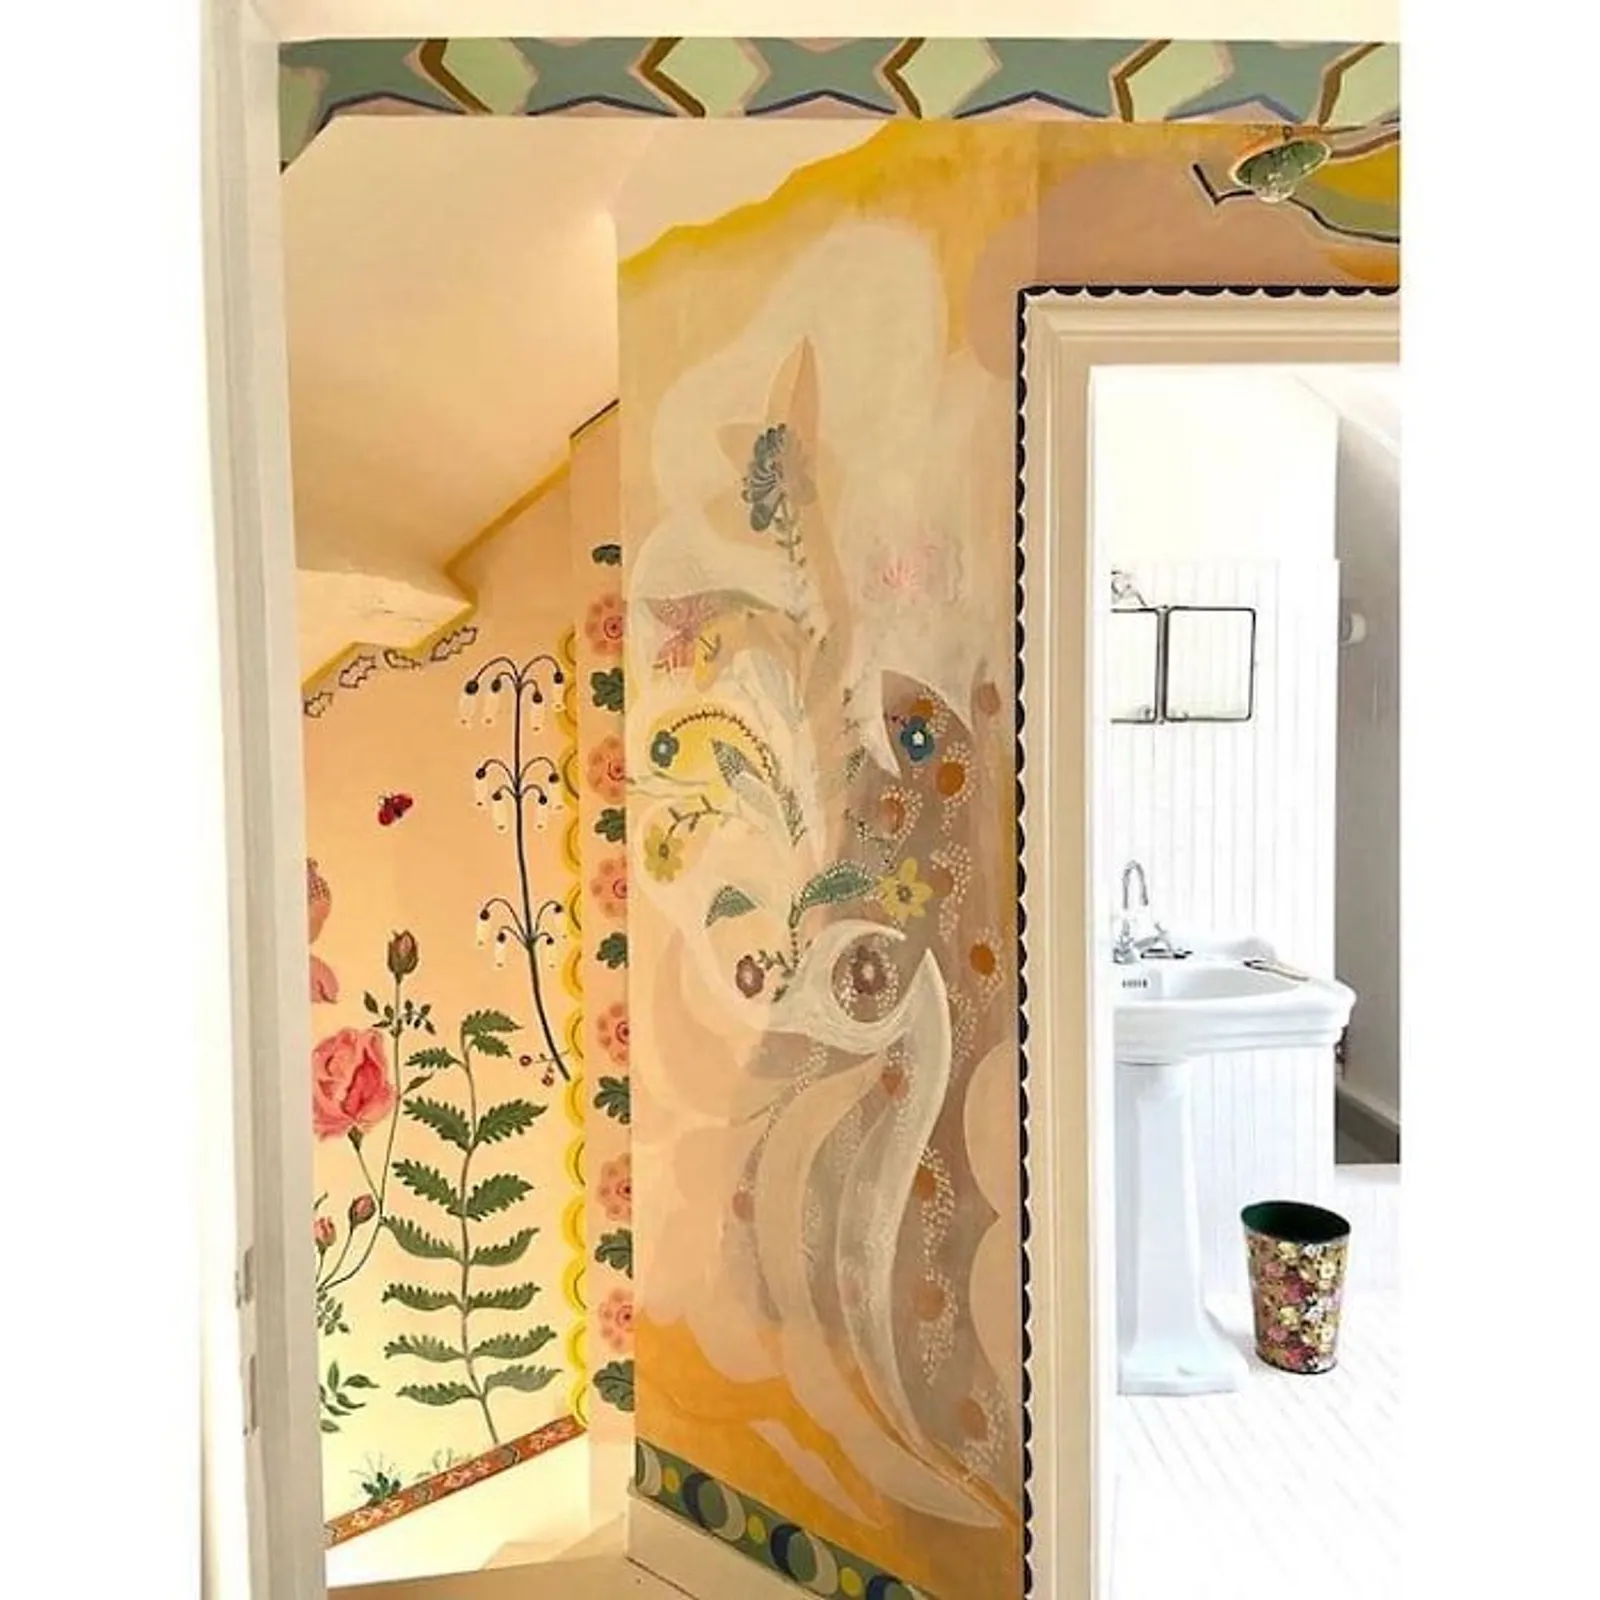 Seniman Ini Hias Rumahnya dengan Lukisan Tangan Saat Karantina